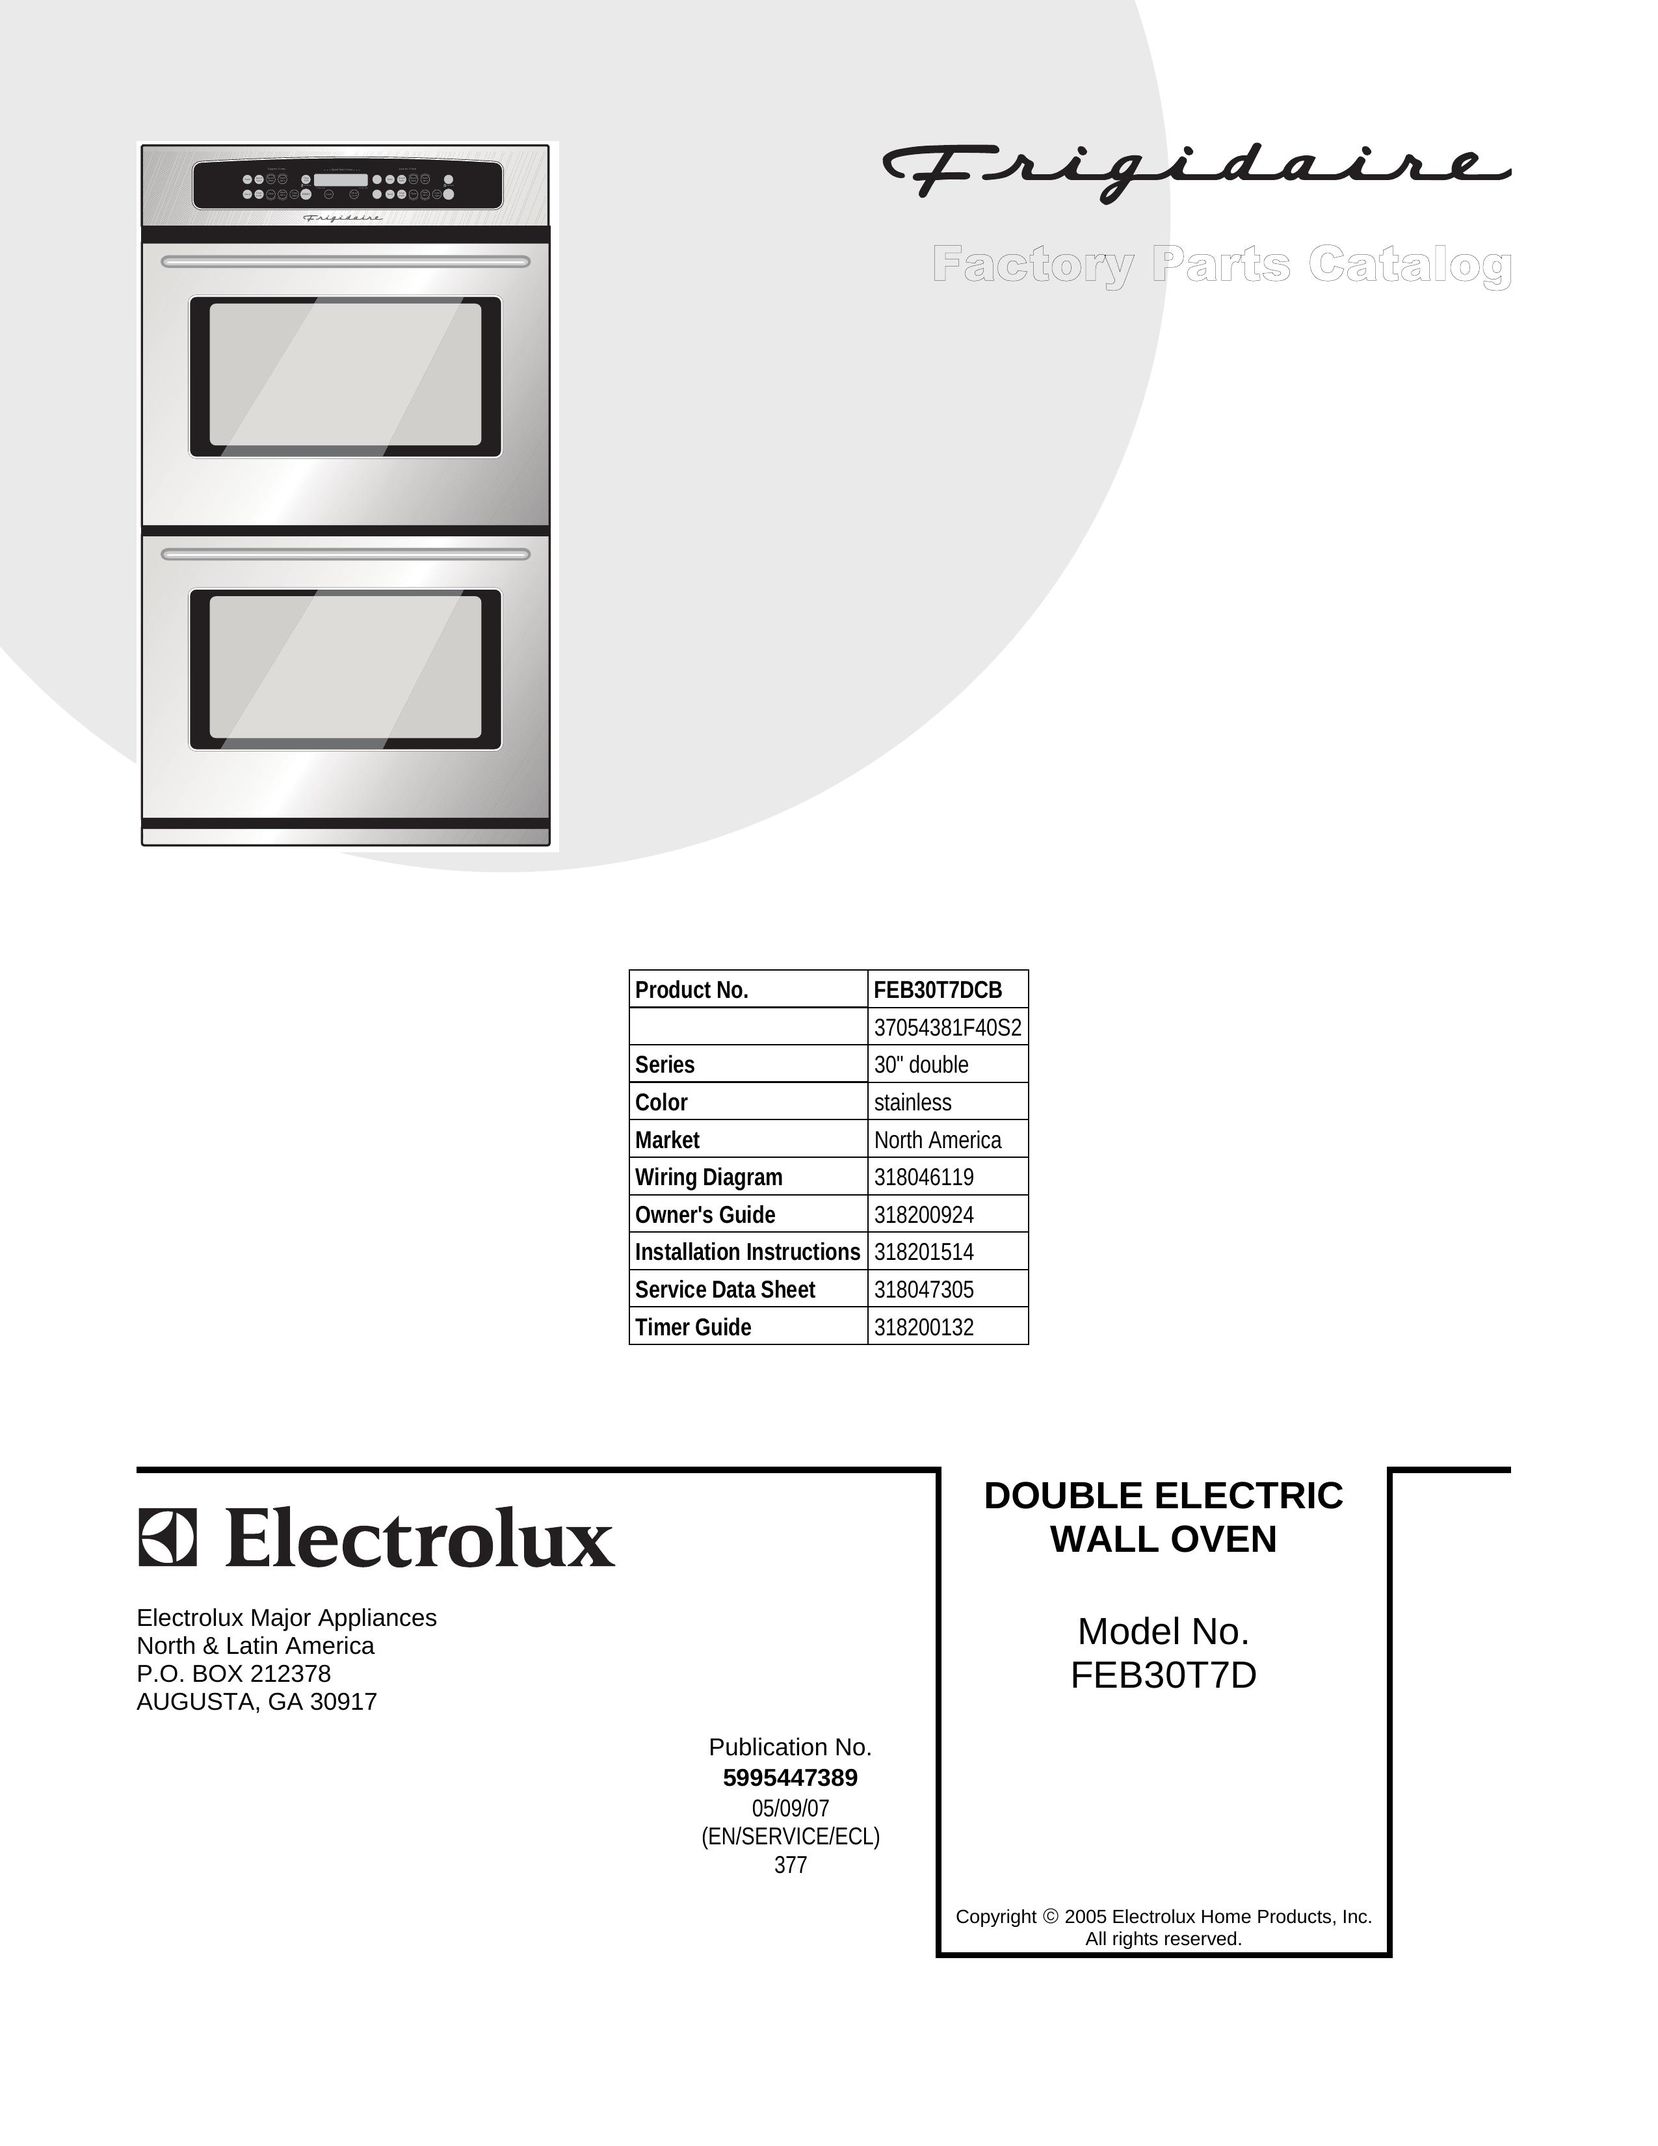 Frigidaire FEB30T7D Oven User Manual